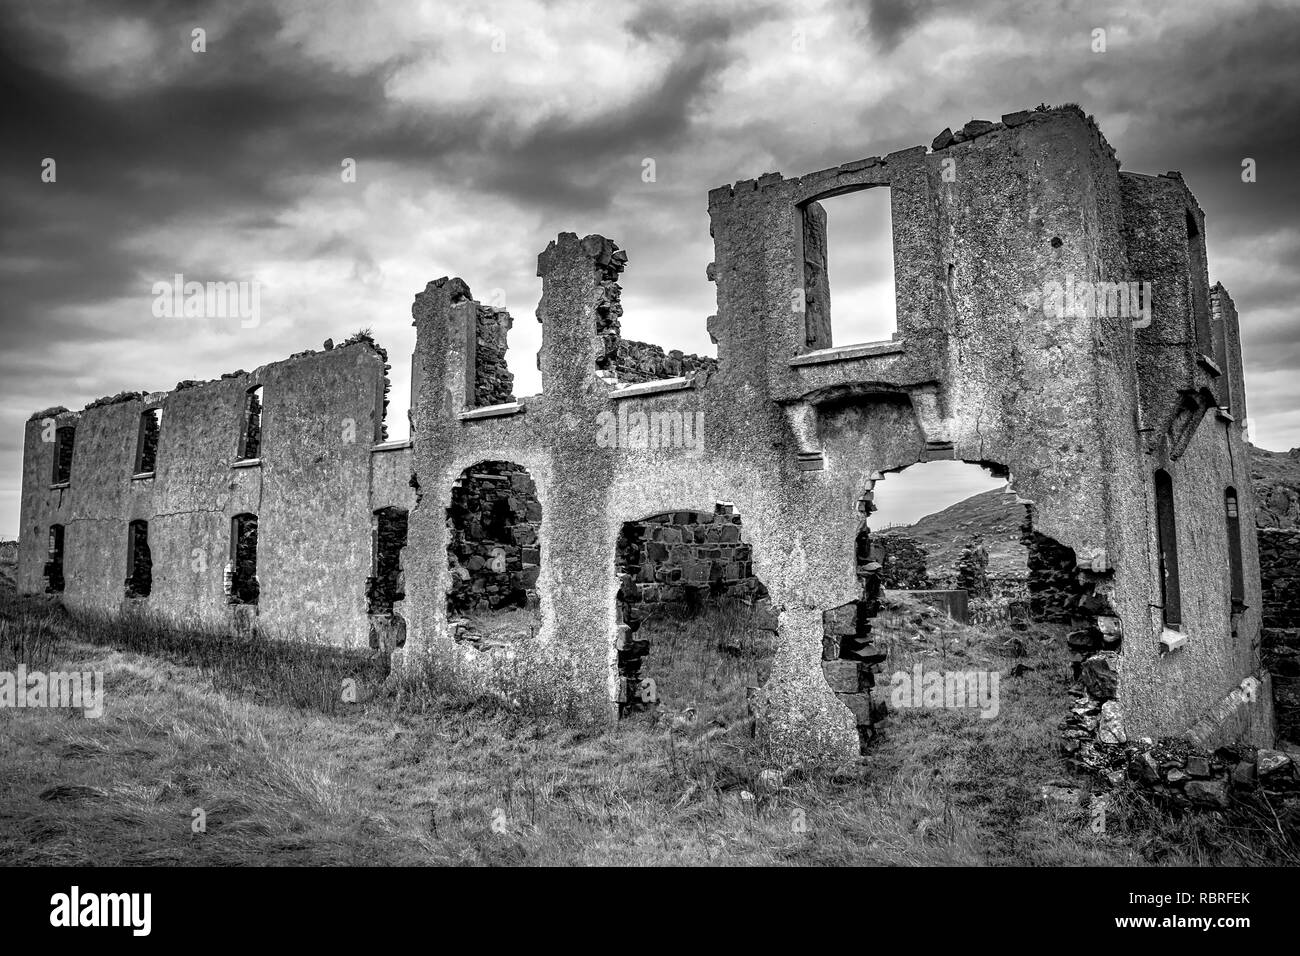 Il s'agit de ruines d'une vieille maison à Torr Head dans le nord de l'Irlande, sur la côte d'Antrim Banque D'Images